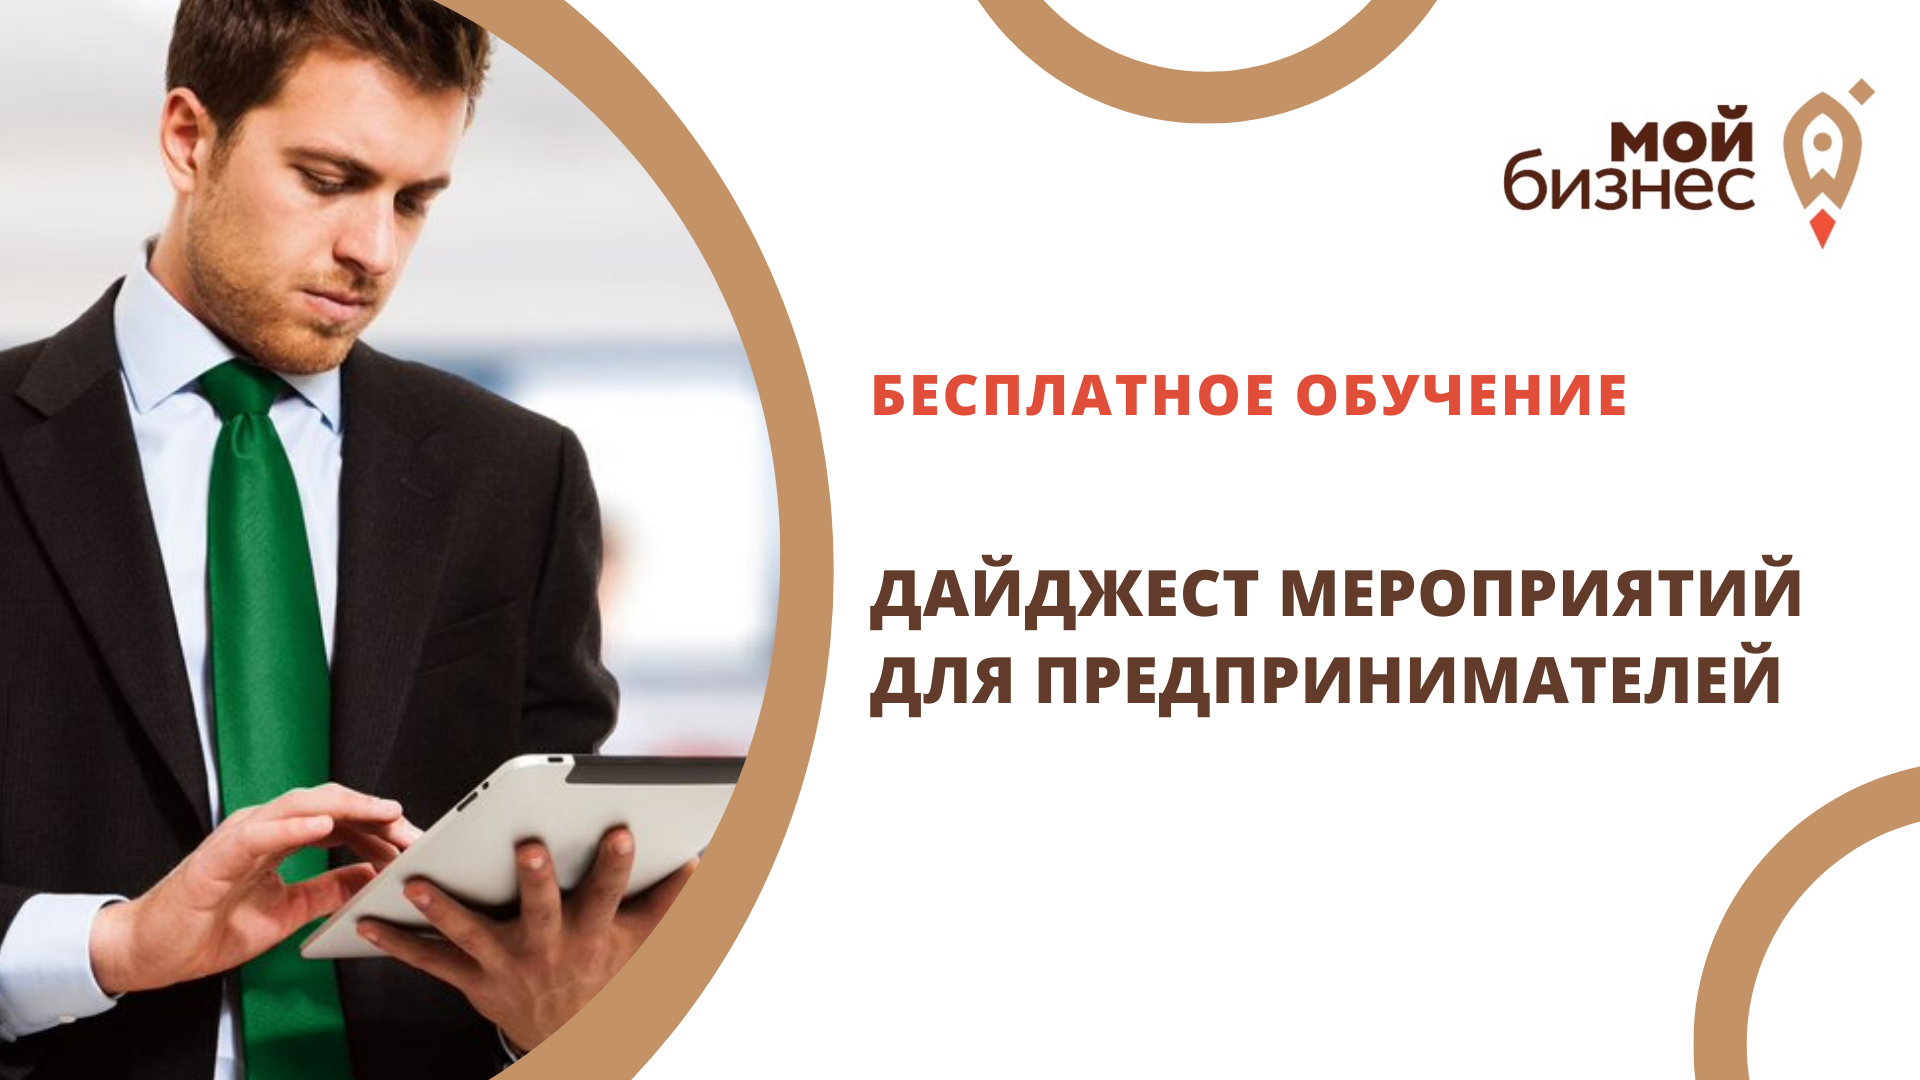 Рекламе и маркетингу обучили будущих предпринимателей Воронежской области